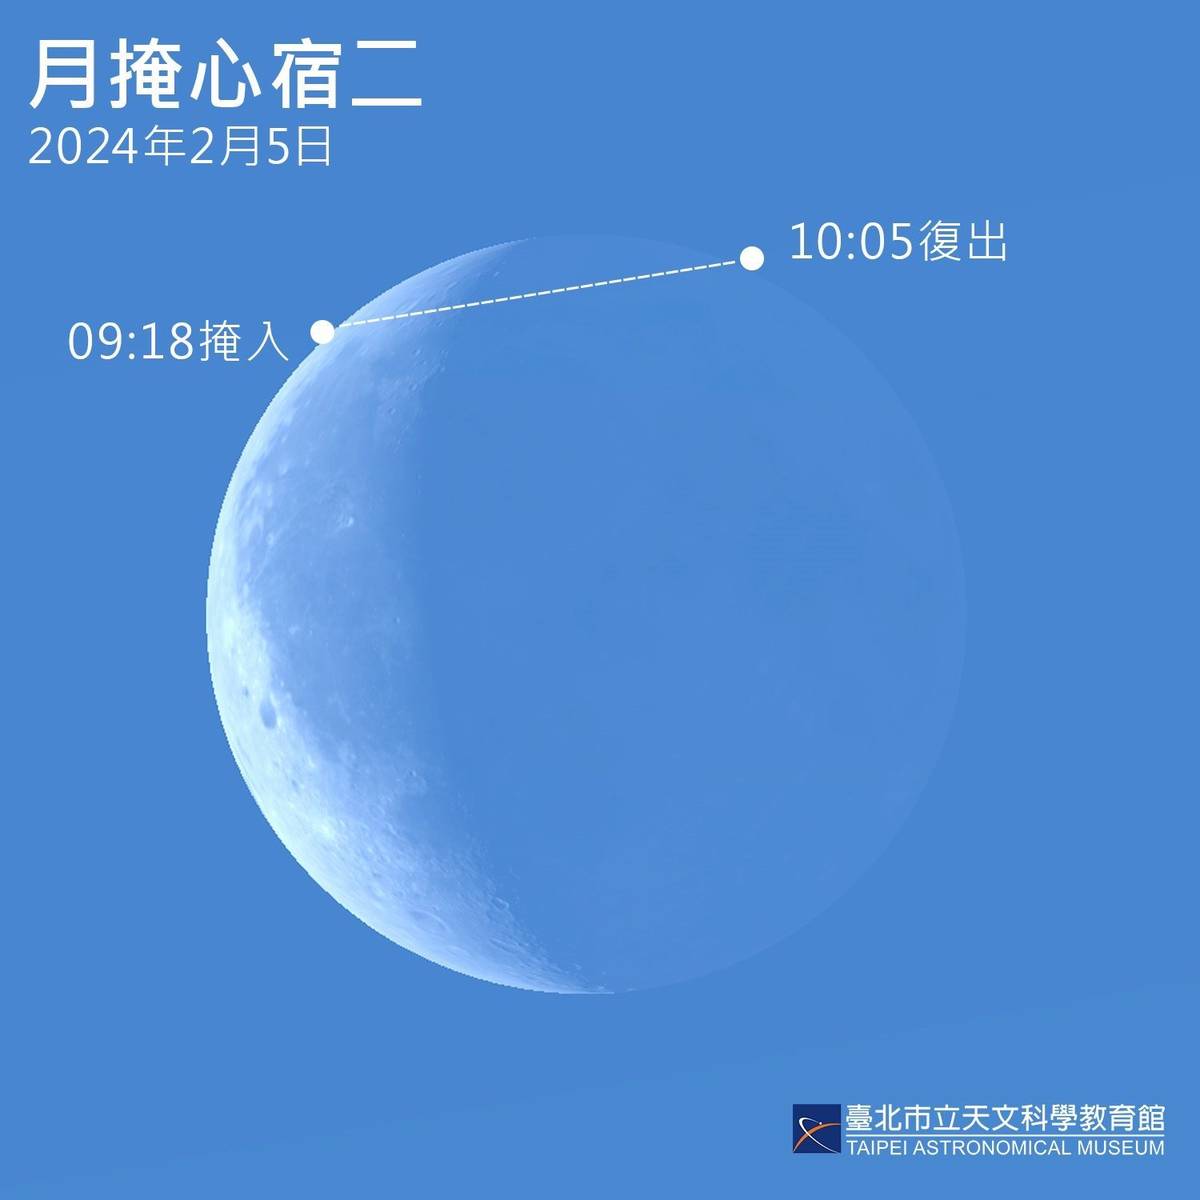 「月掩心宿二」可用雙筒或小型望遠鏡觀察(圖片提供:臺北天文館)